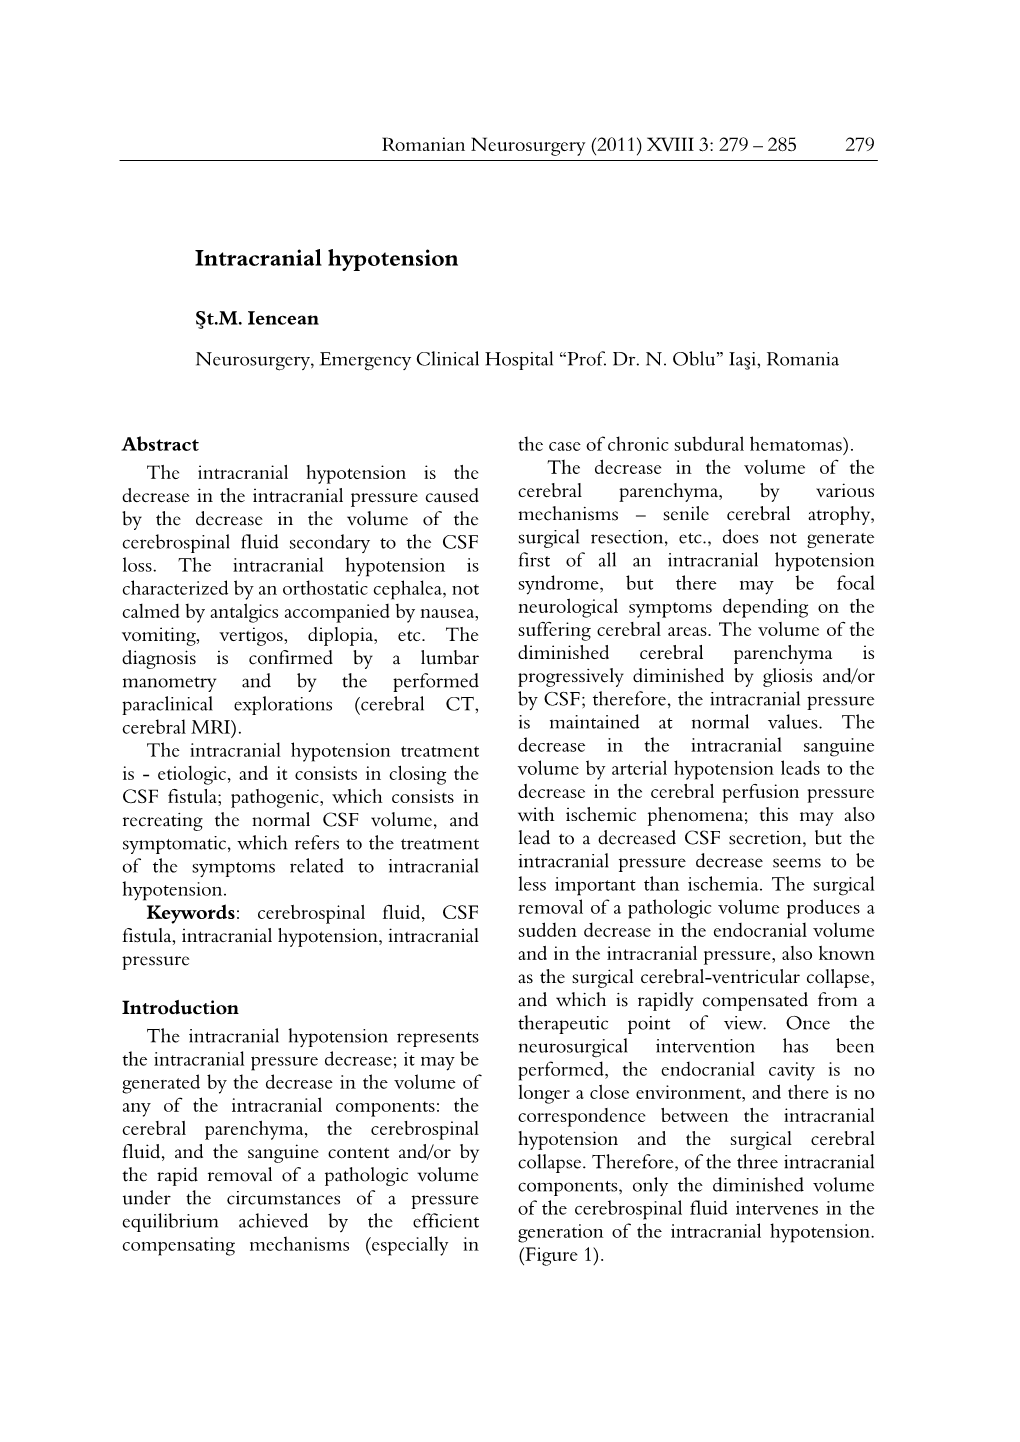 Intracranial Hypotension